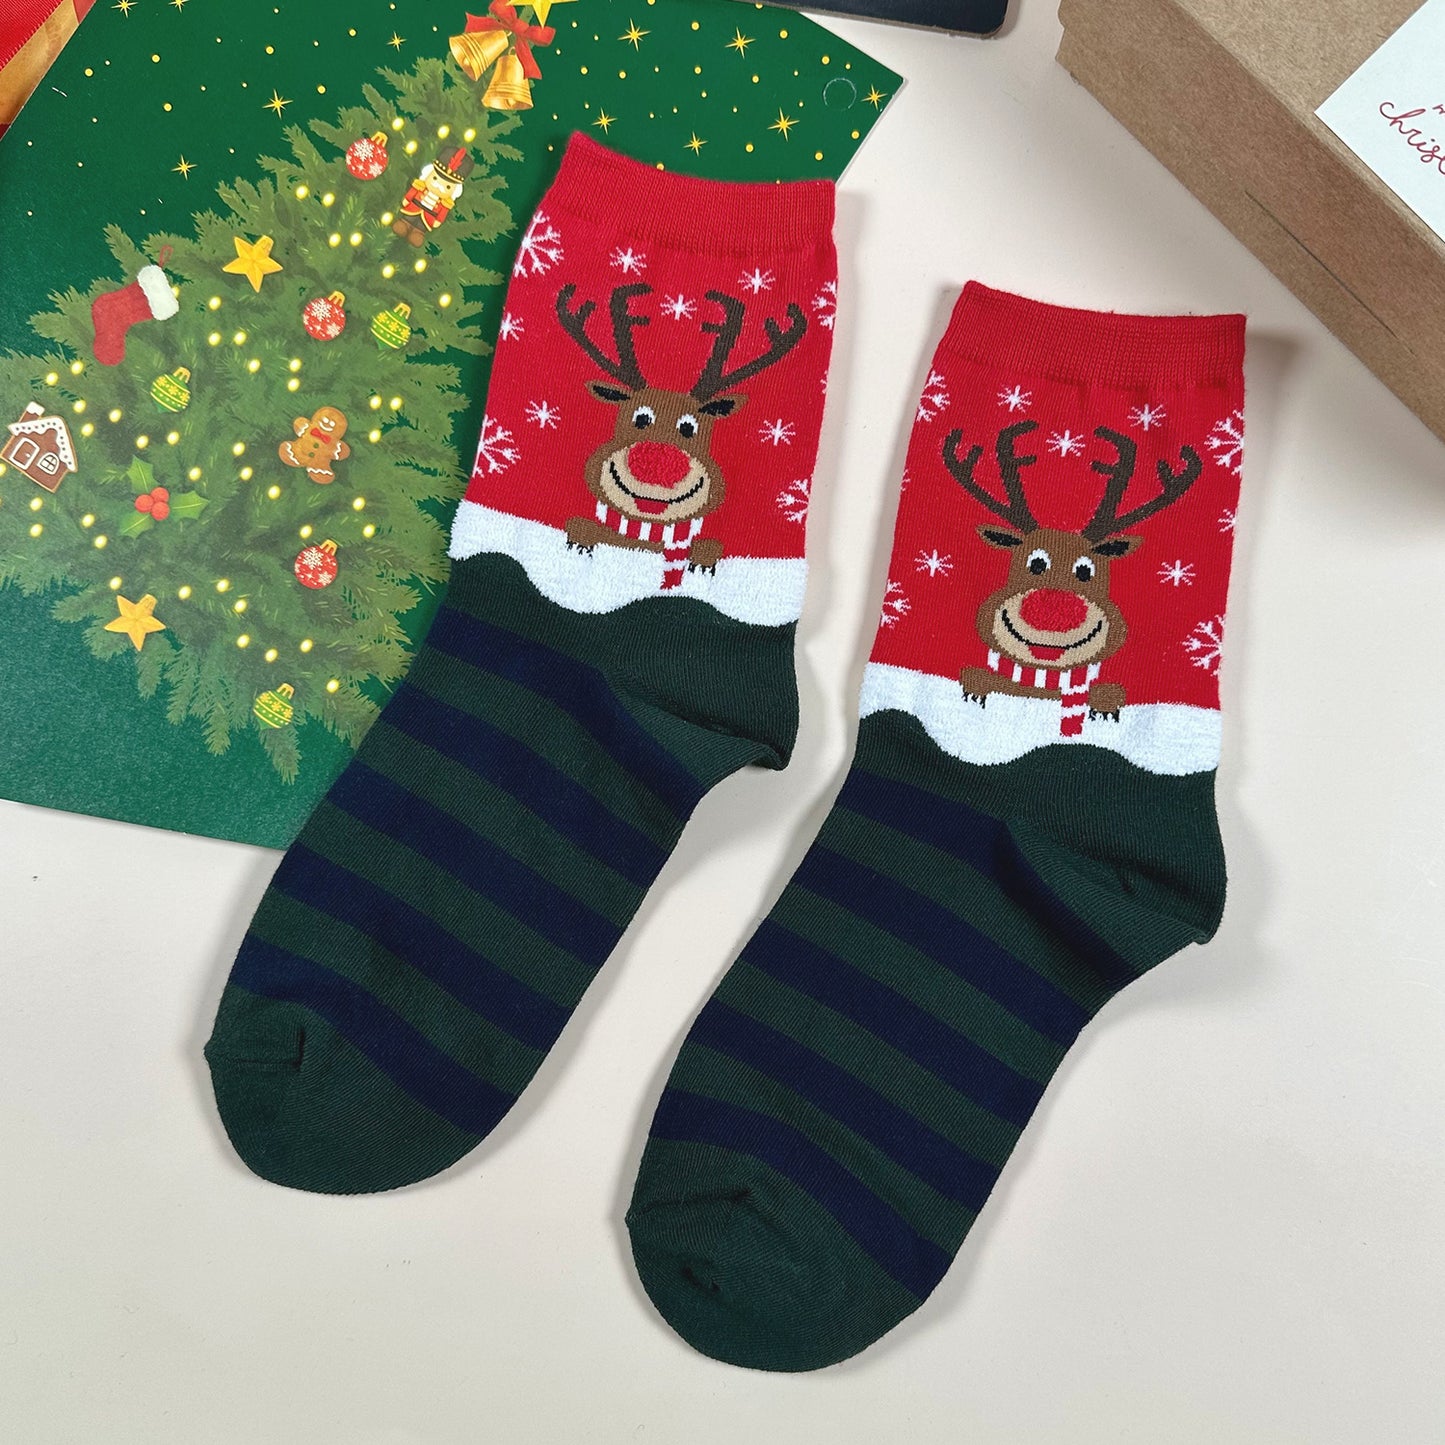 Women's Crew Winter Gift Socks